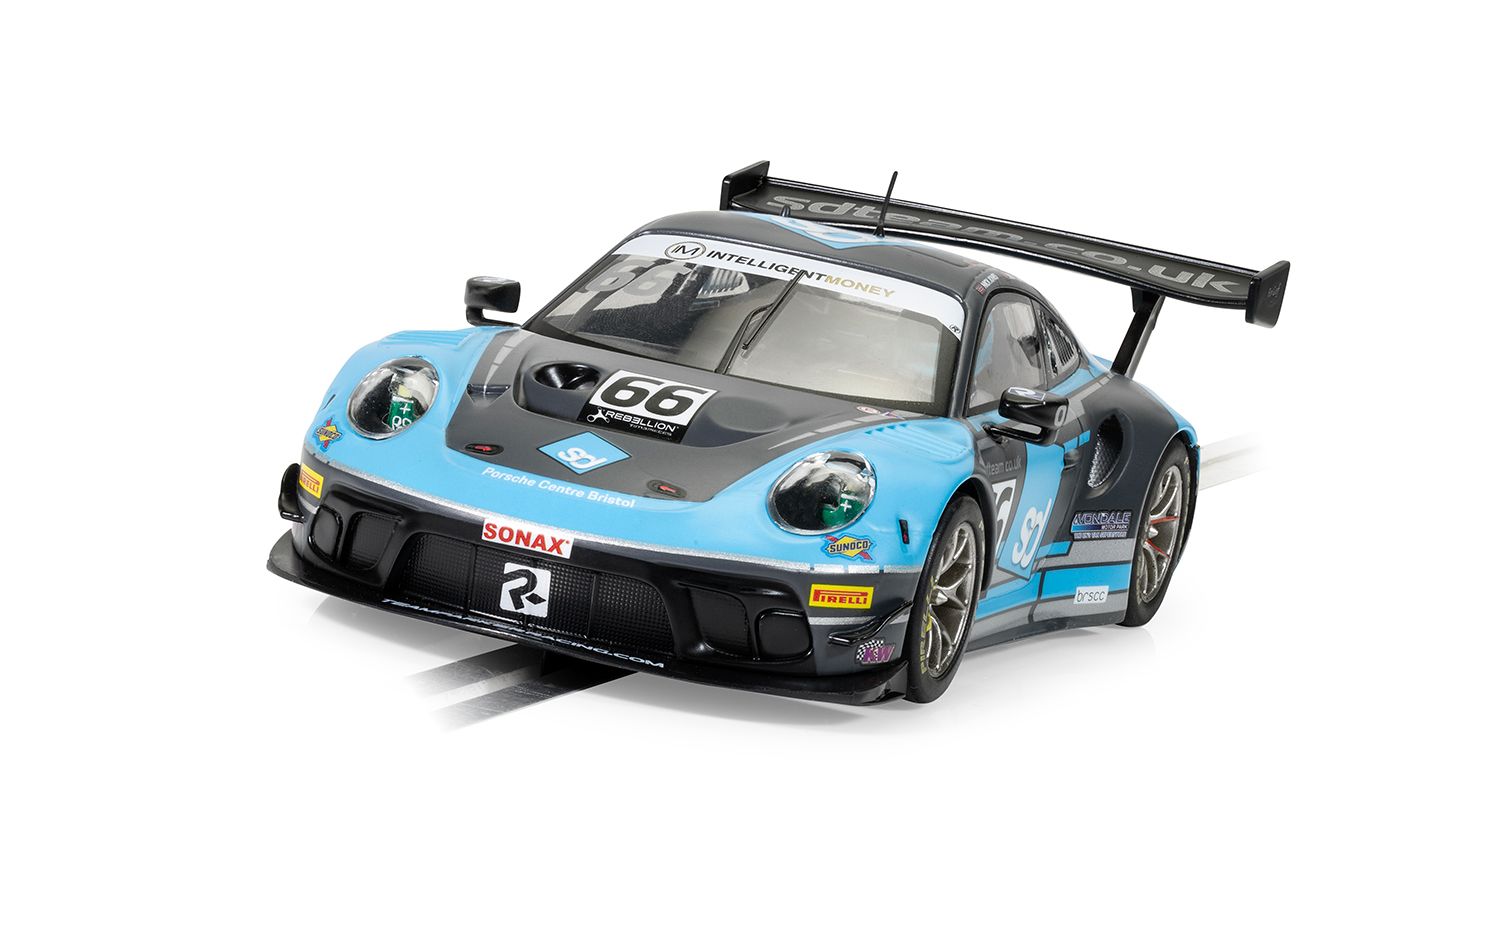 C4415 Porsche 911 GT3 R - Team Parker Racing - British GT 2022